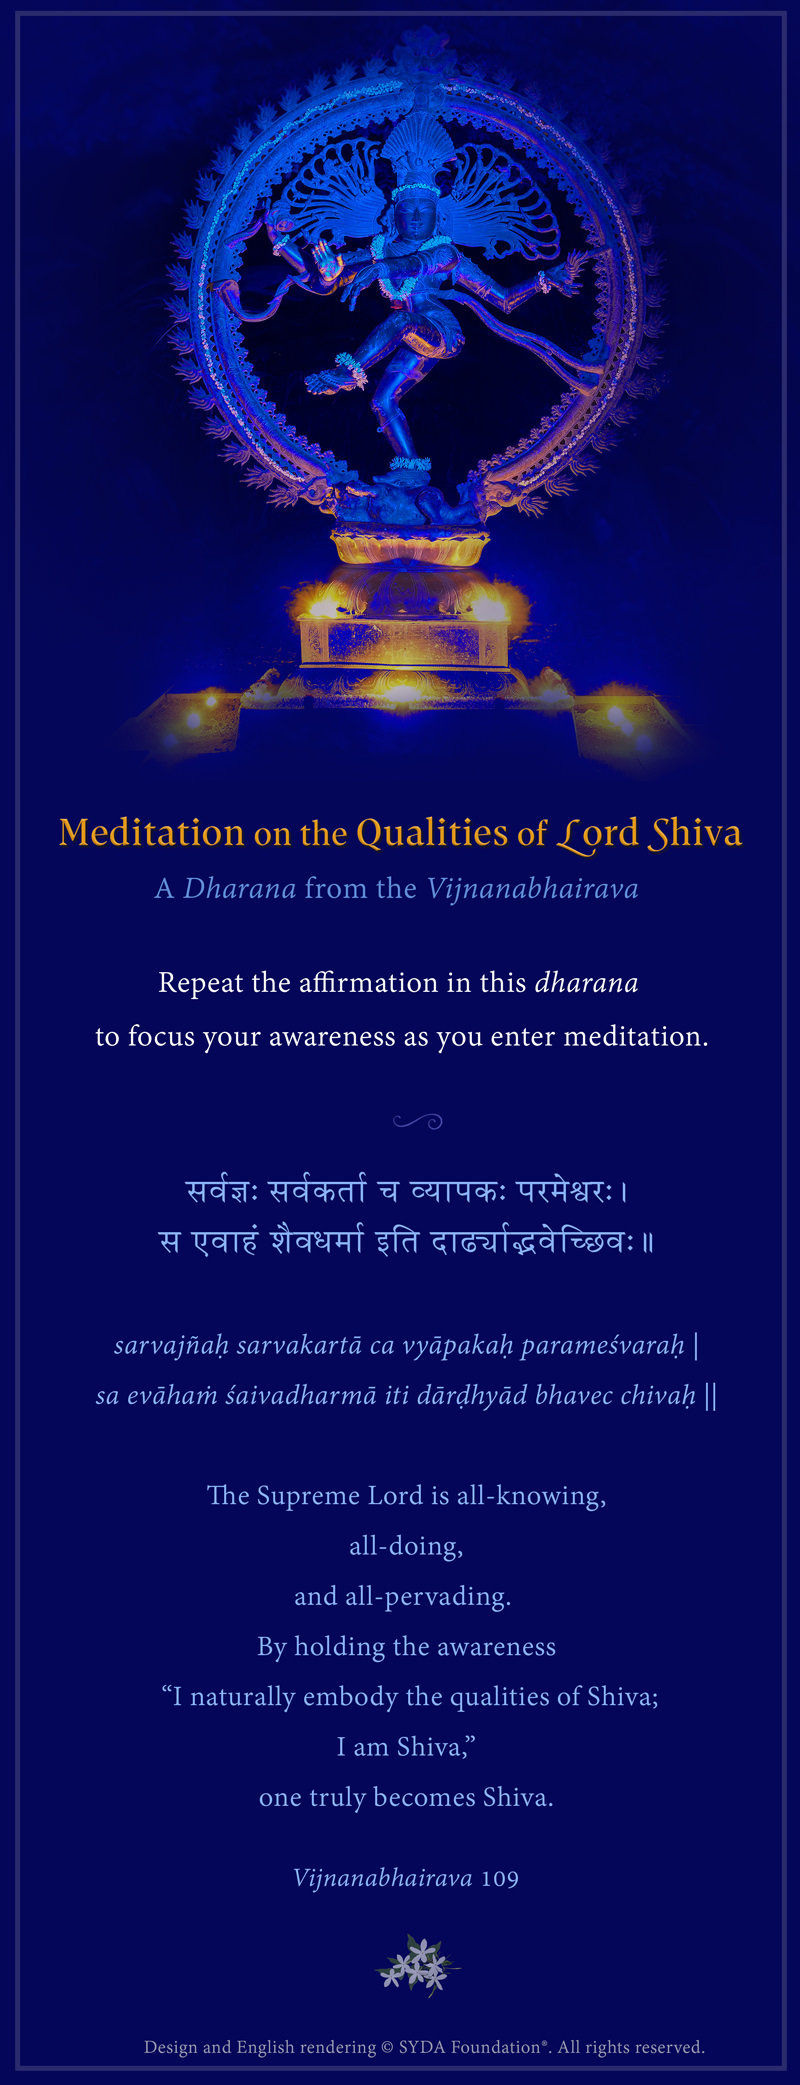 Meditation on the Heart - A Dharana from the Vijnanabhairava